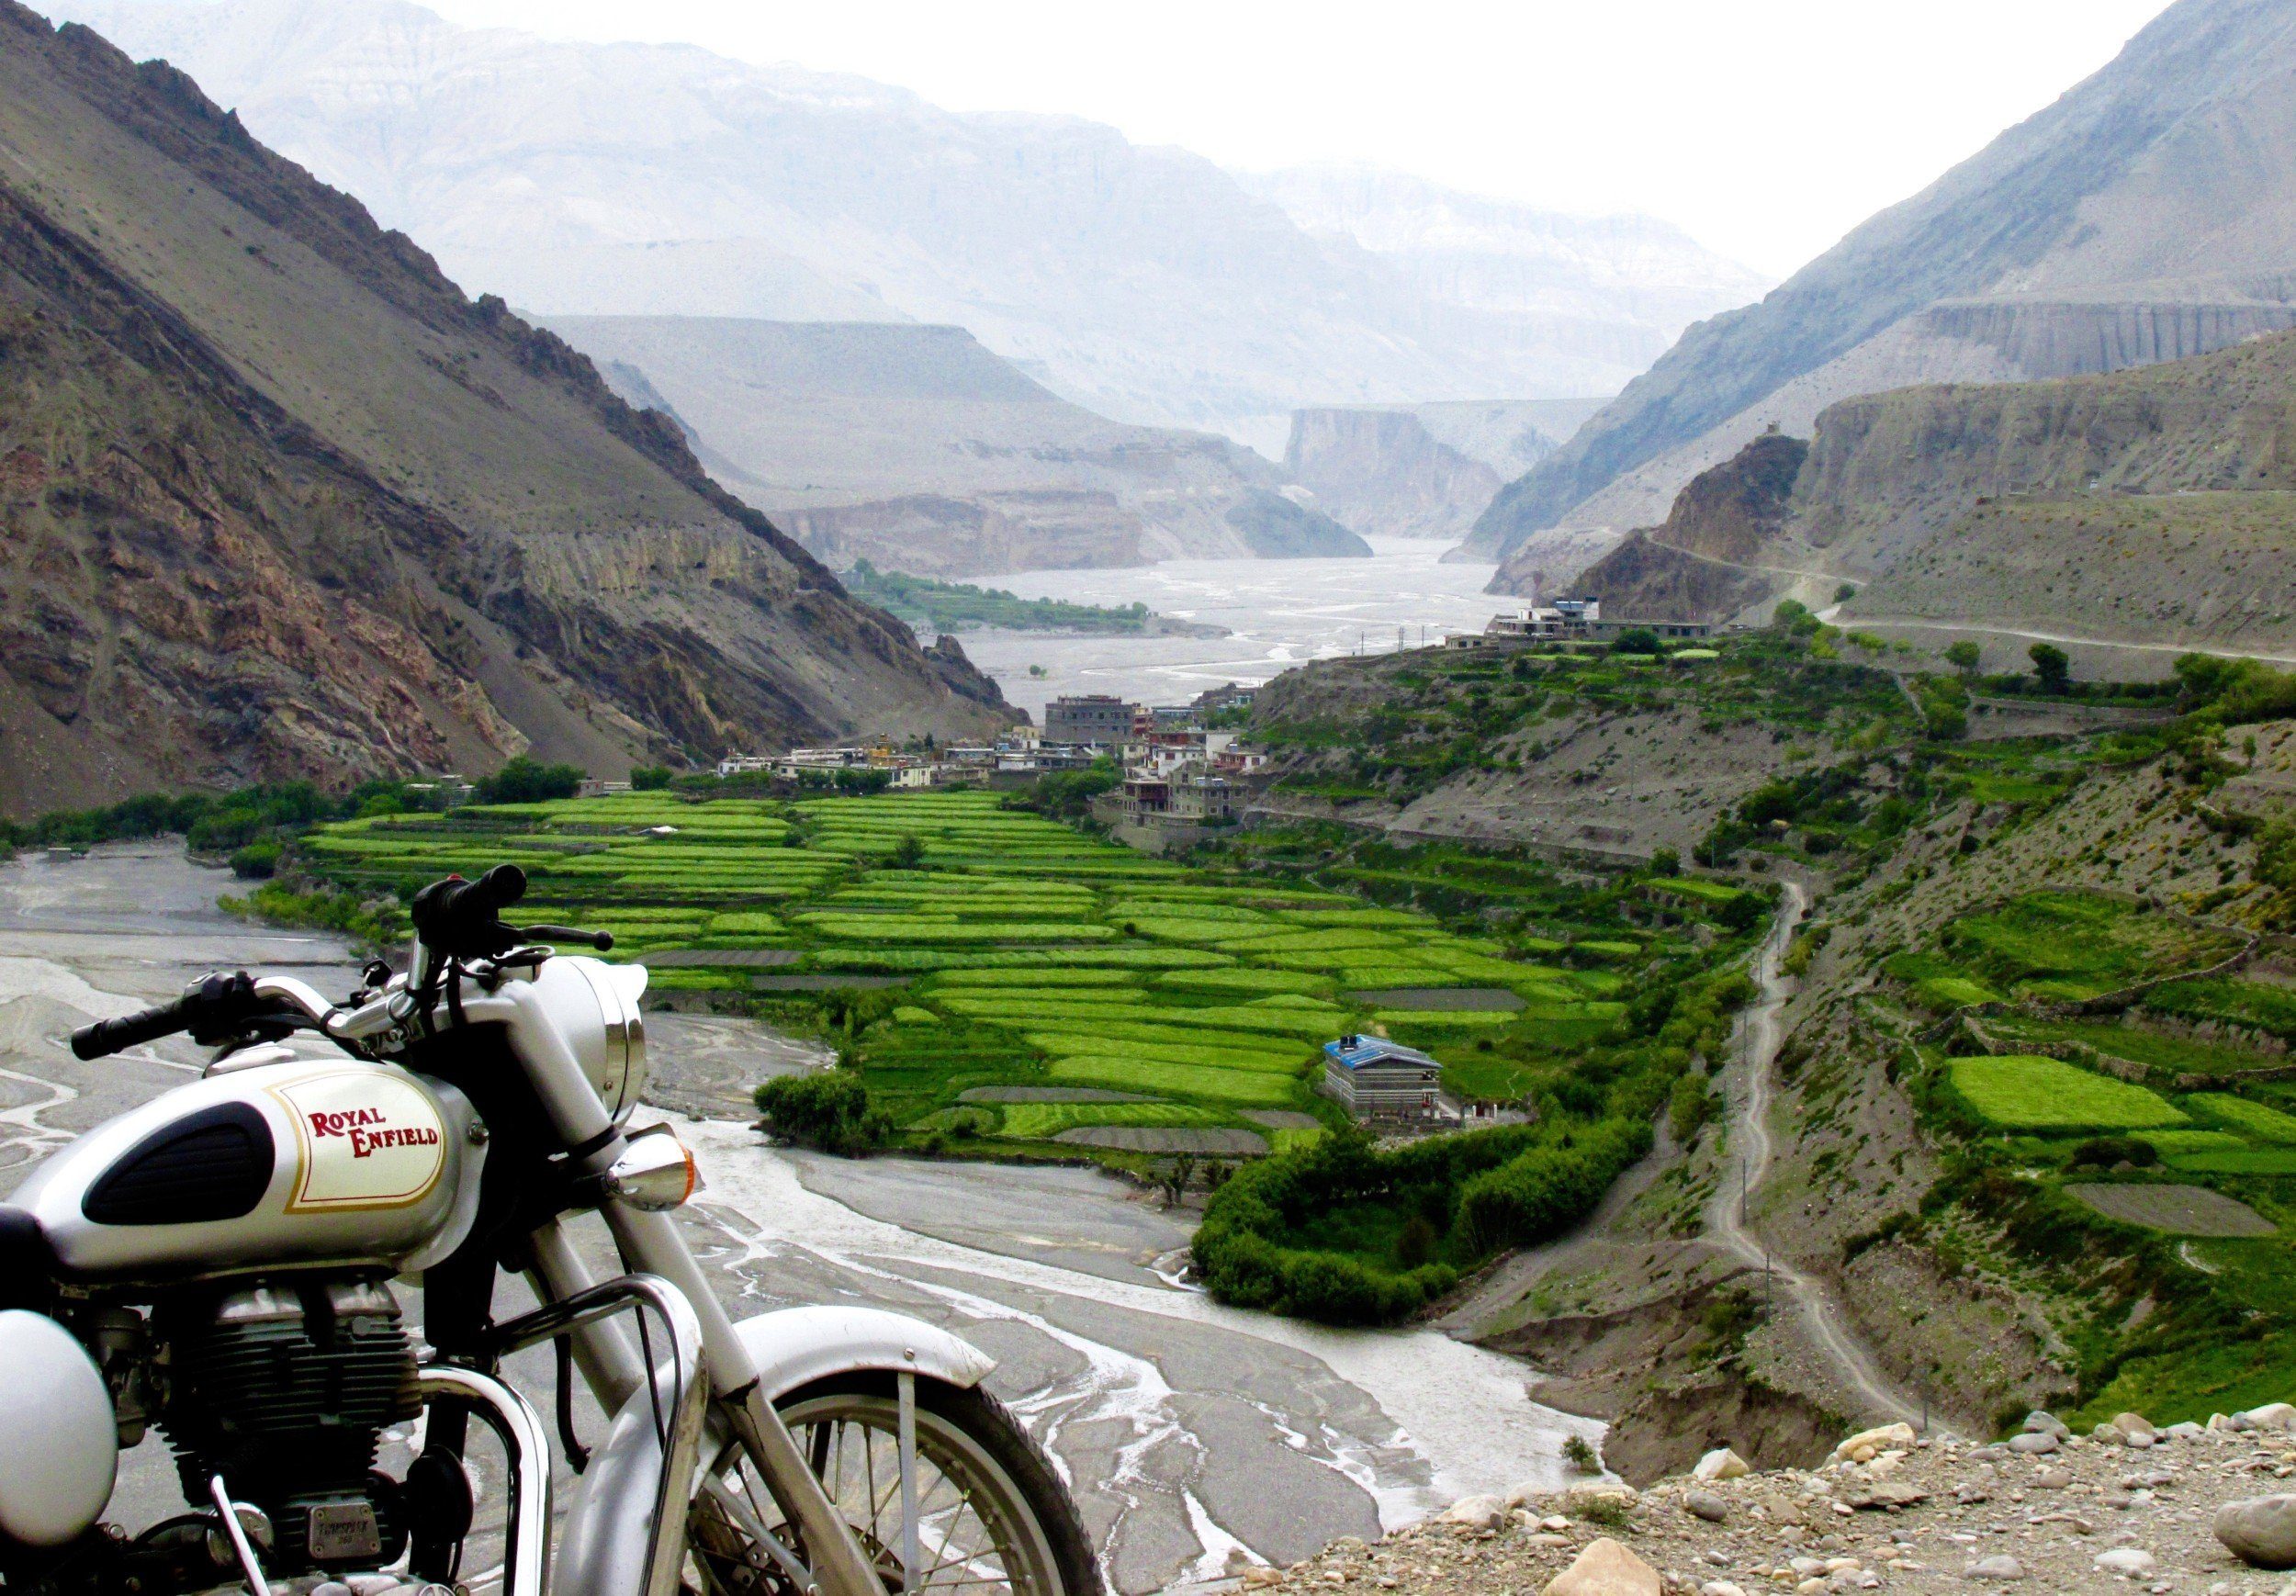 Motorcycle road trip Nepal & Bhutan - Nepal Forever